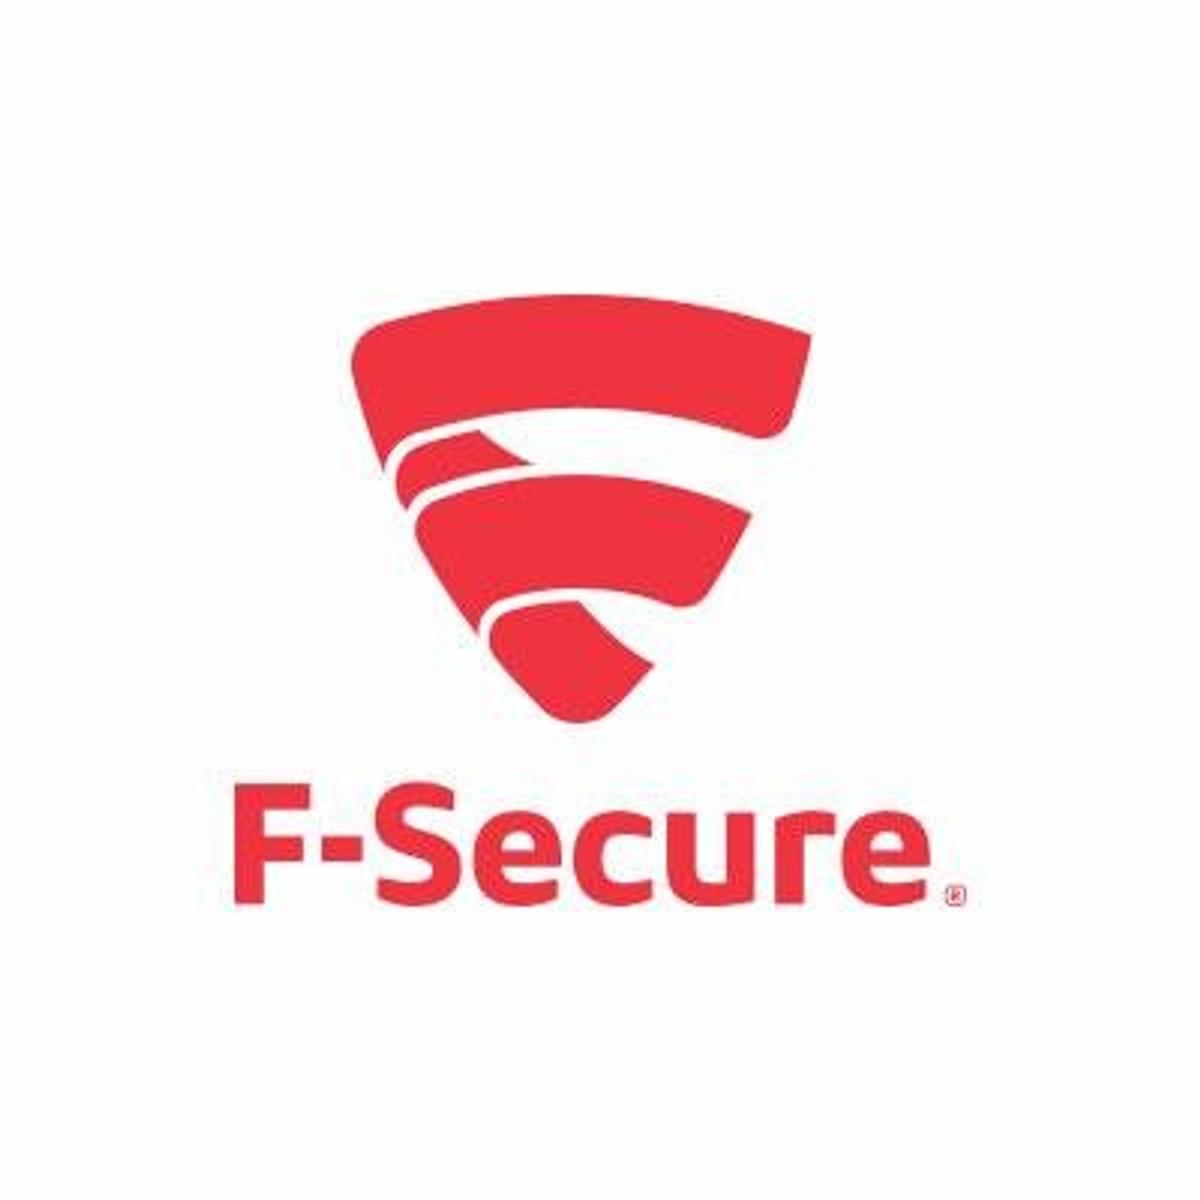 F-Secure Sense beveiligt IoT-producten tegen cyberaanvallen image